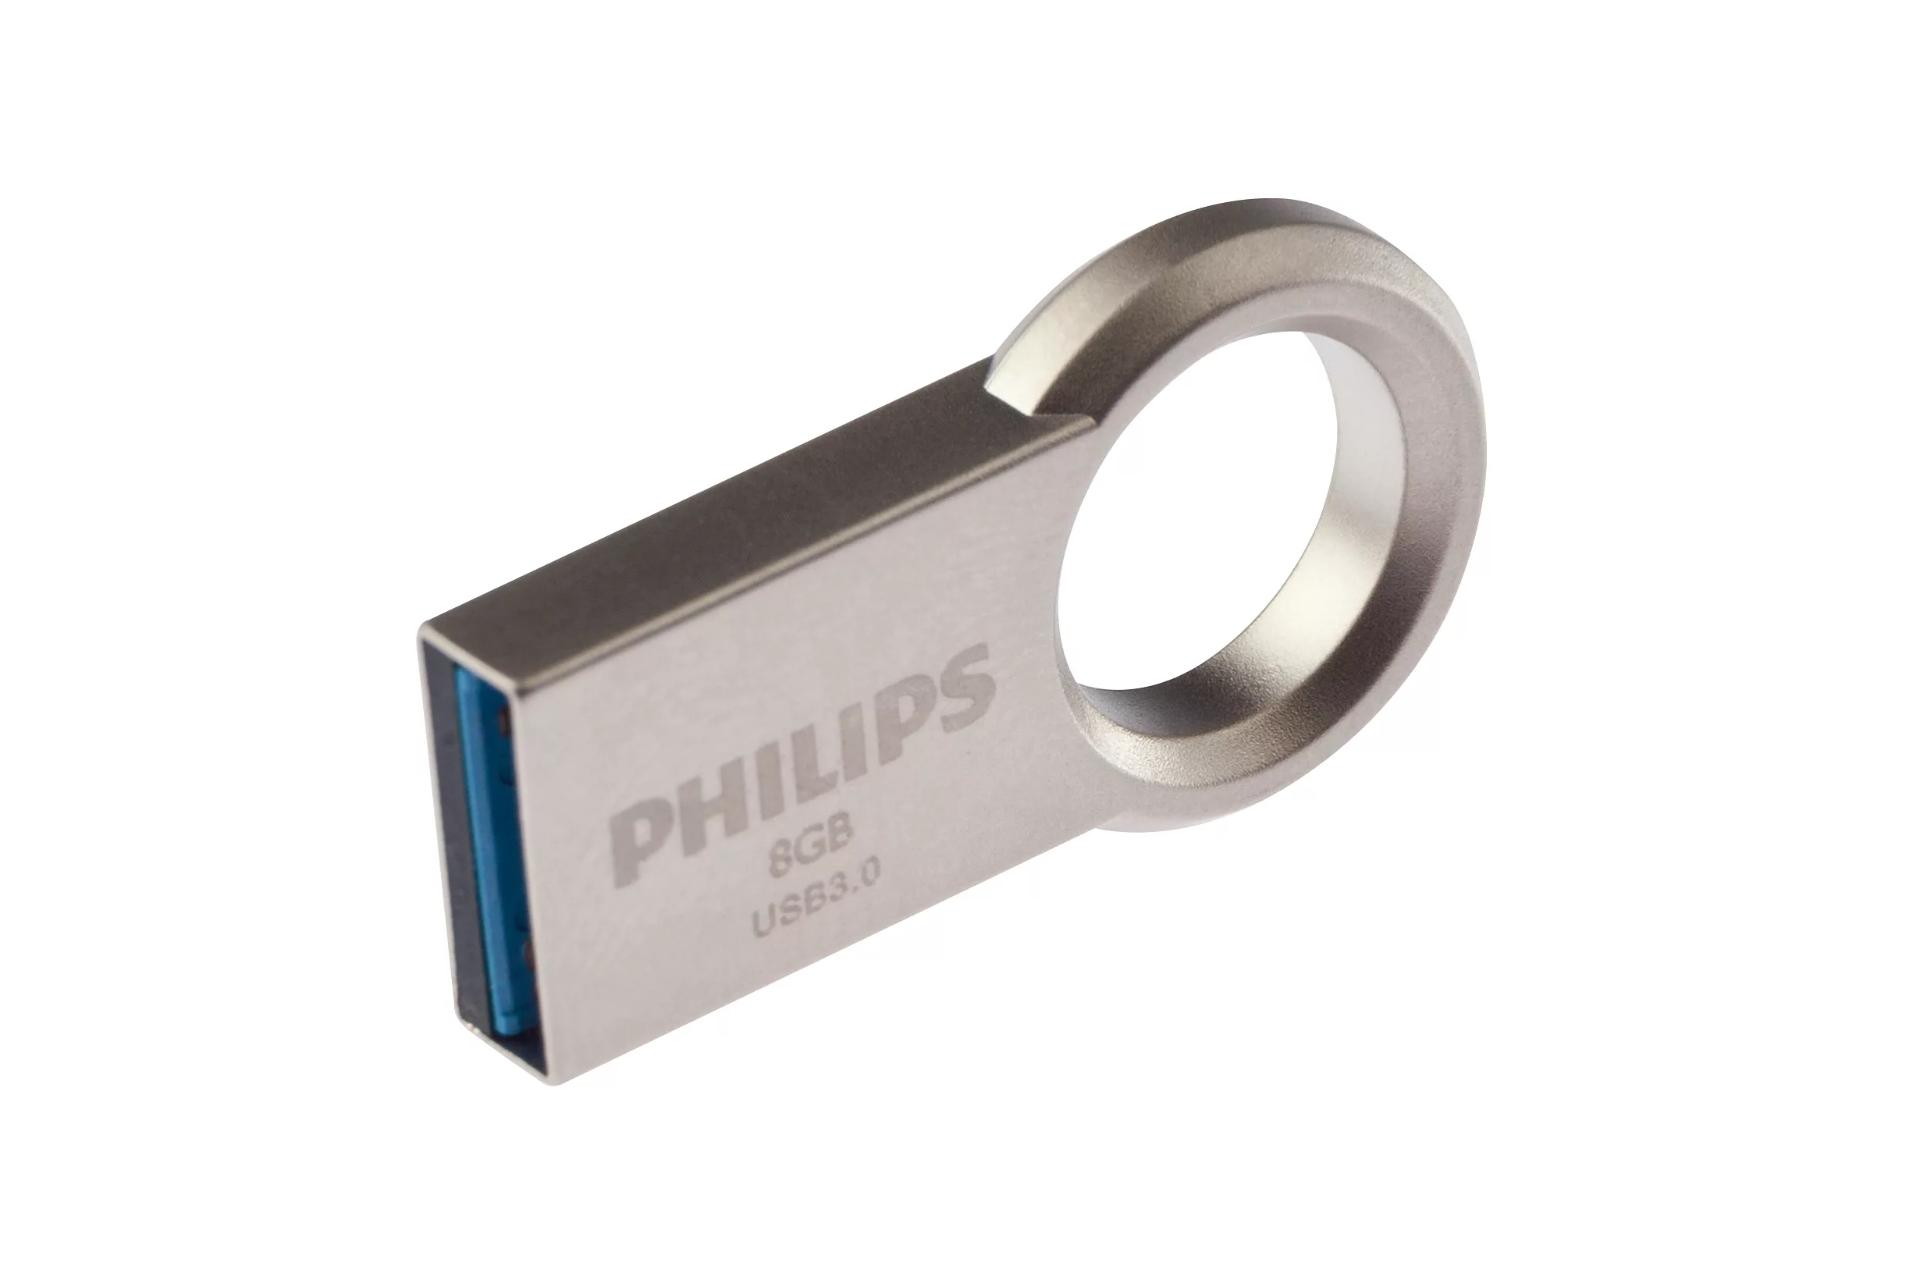 نمای جانبی Philips Circle 8GB / فلش مموری فیلیپس مدل Circle ظرفیت 8 گیگابایت